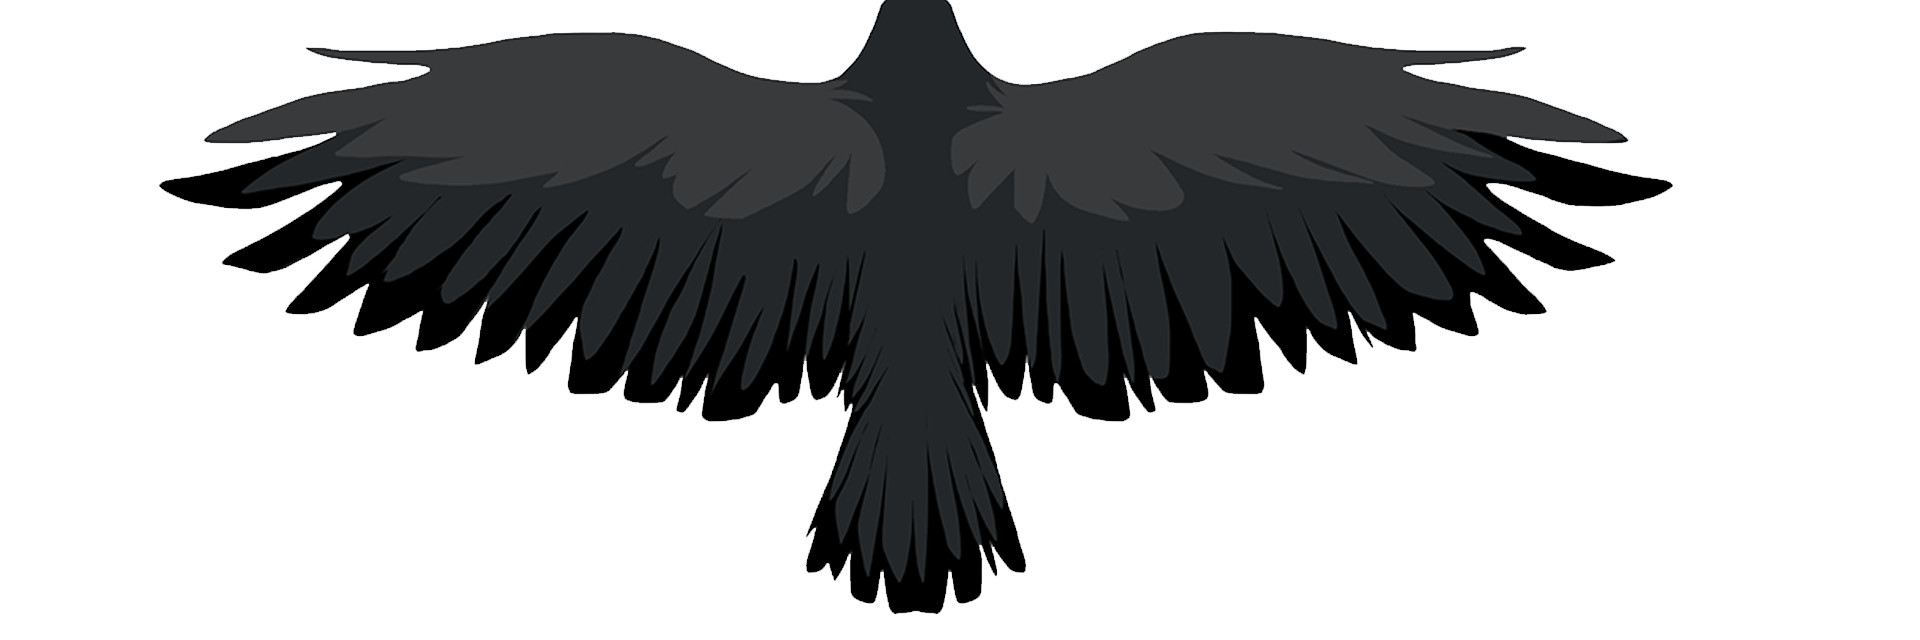 Ворона с расправленными крыльями